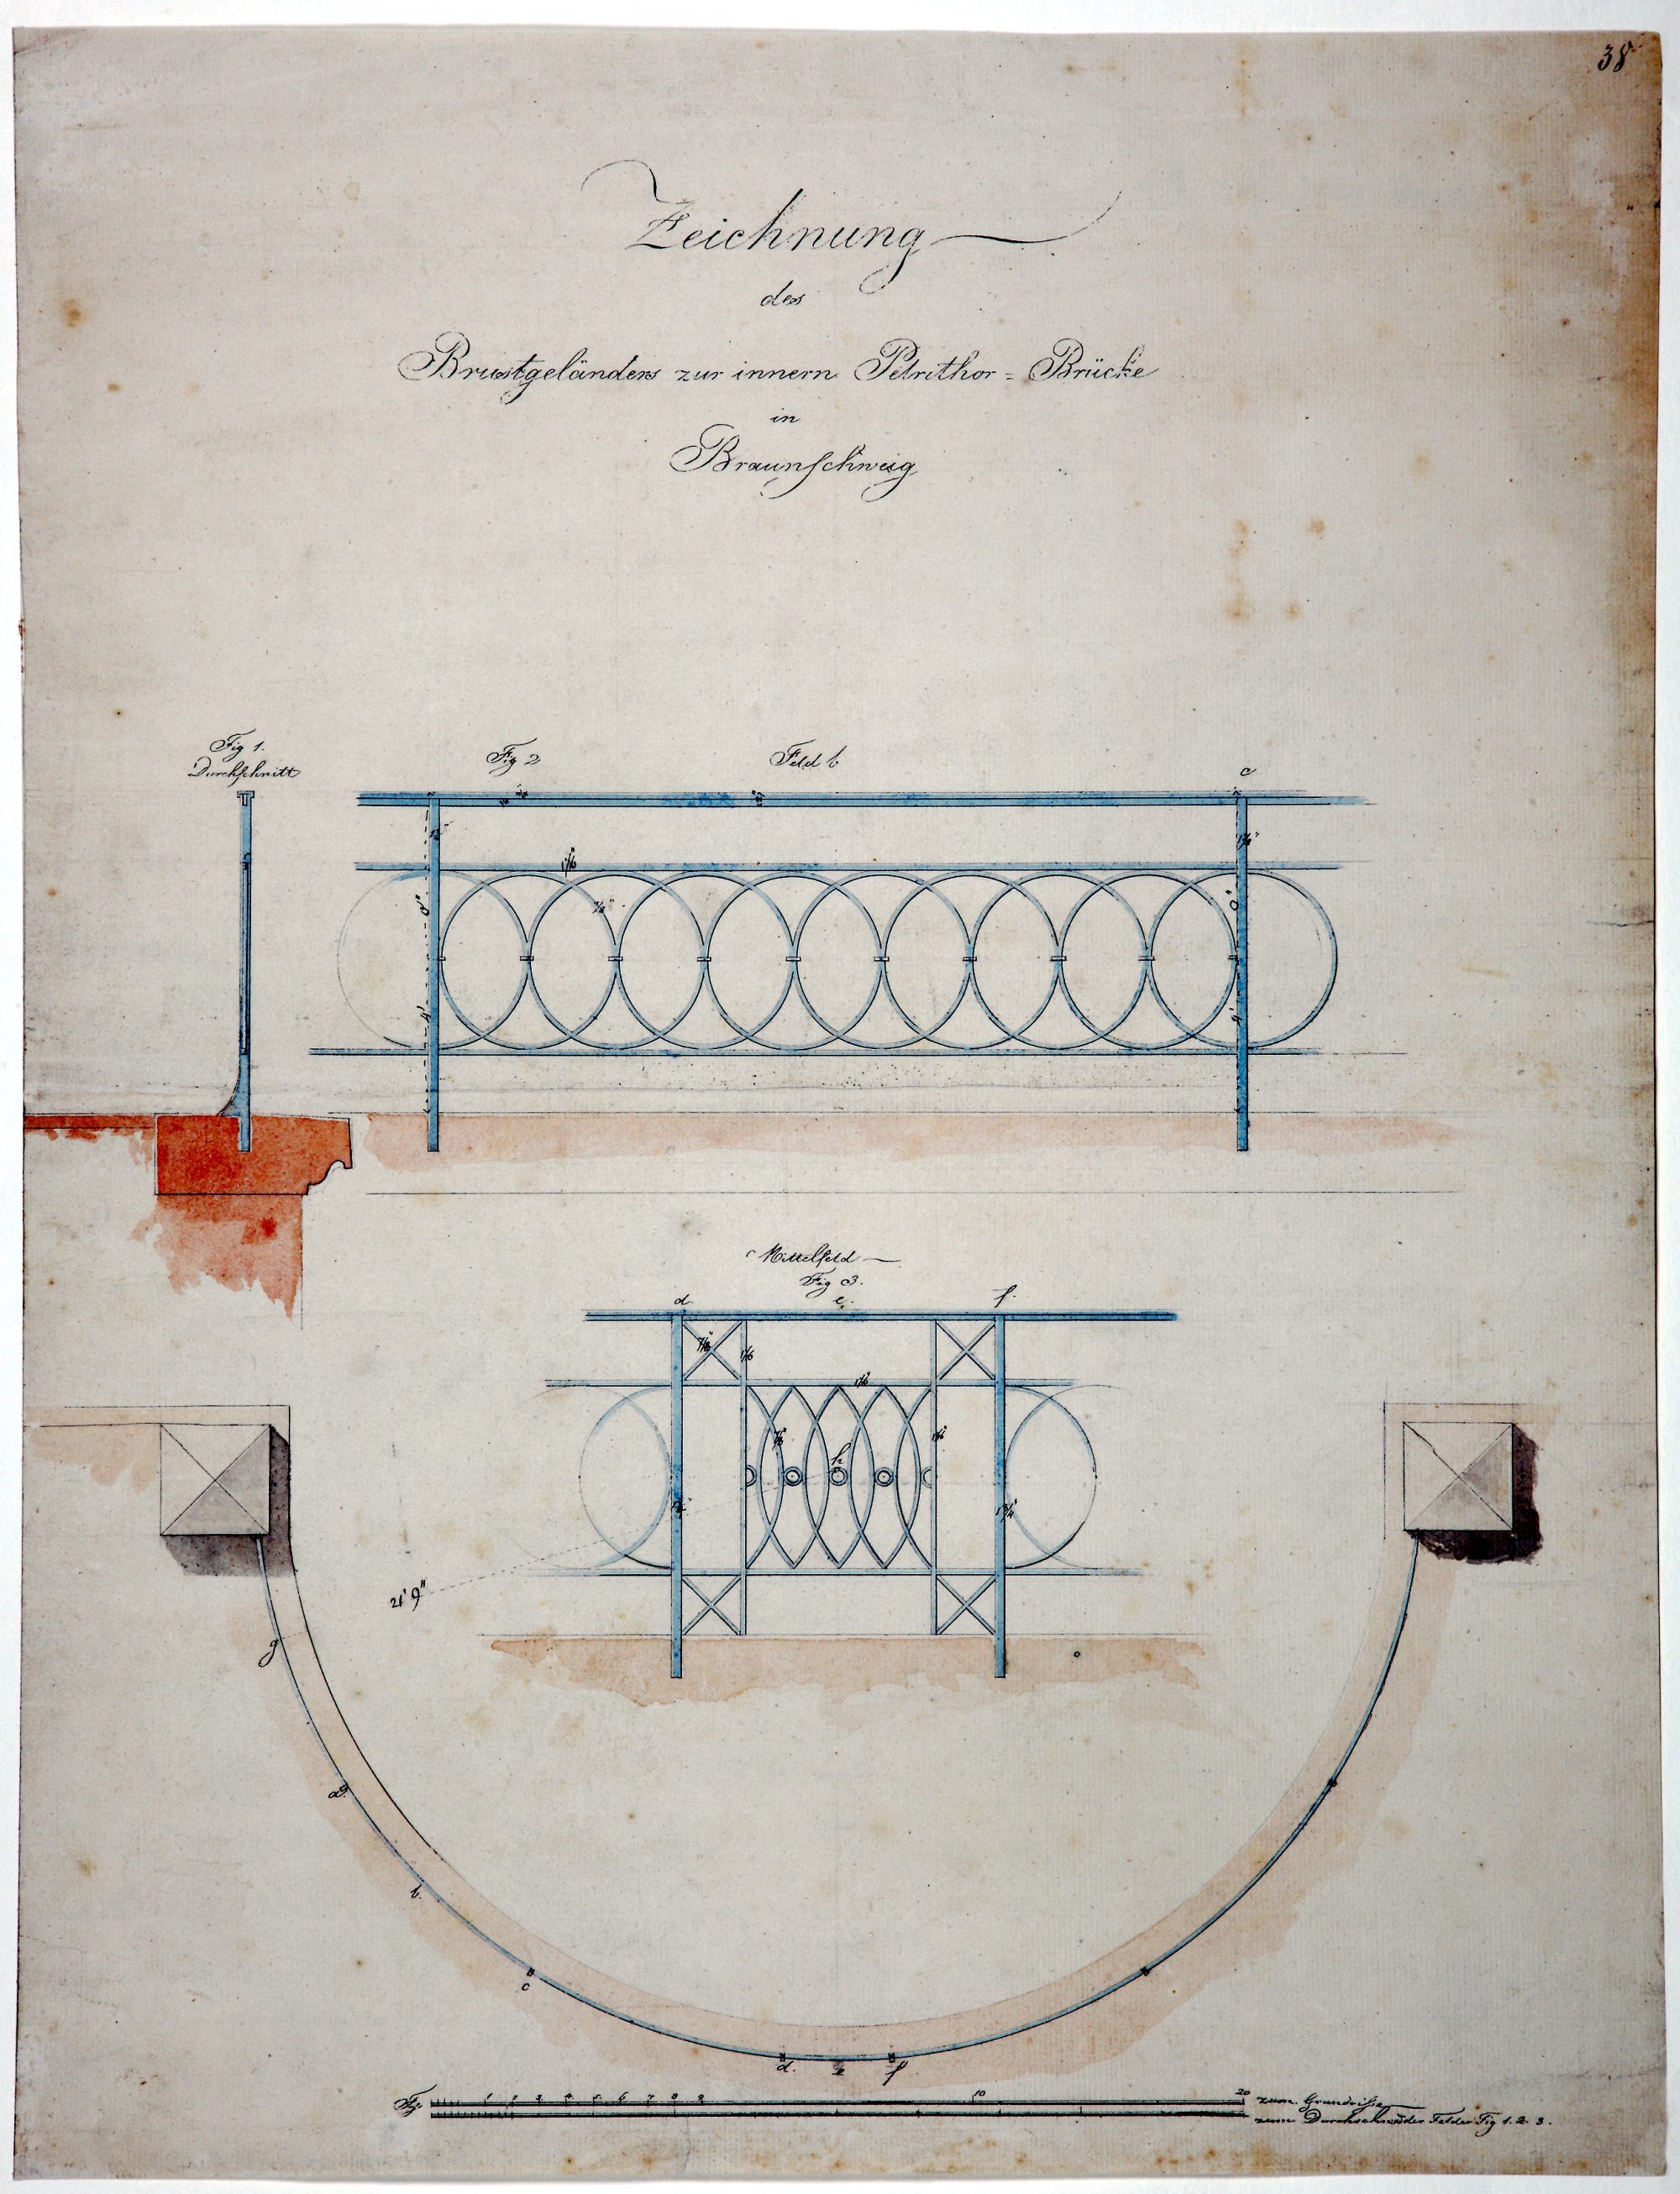 Brücke Neues Petritor, Entwurfszeichnung von Krahe, Geländerdetails, 1819